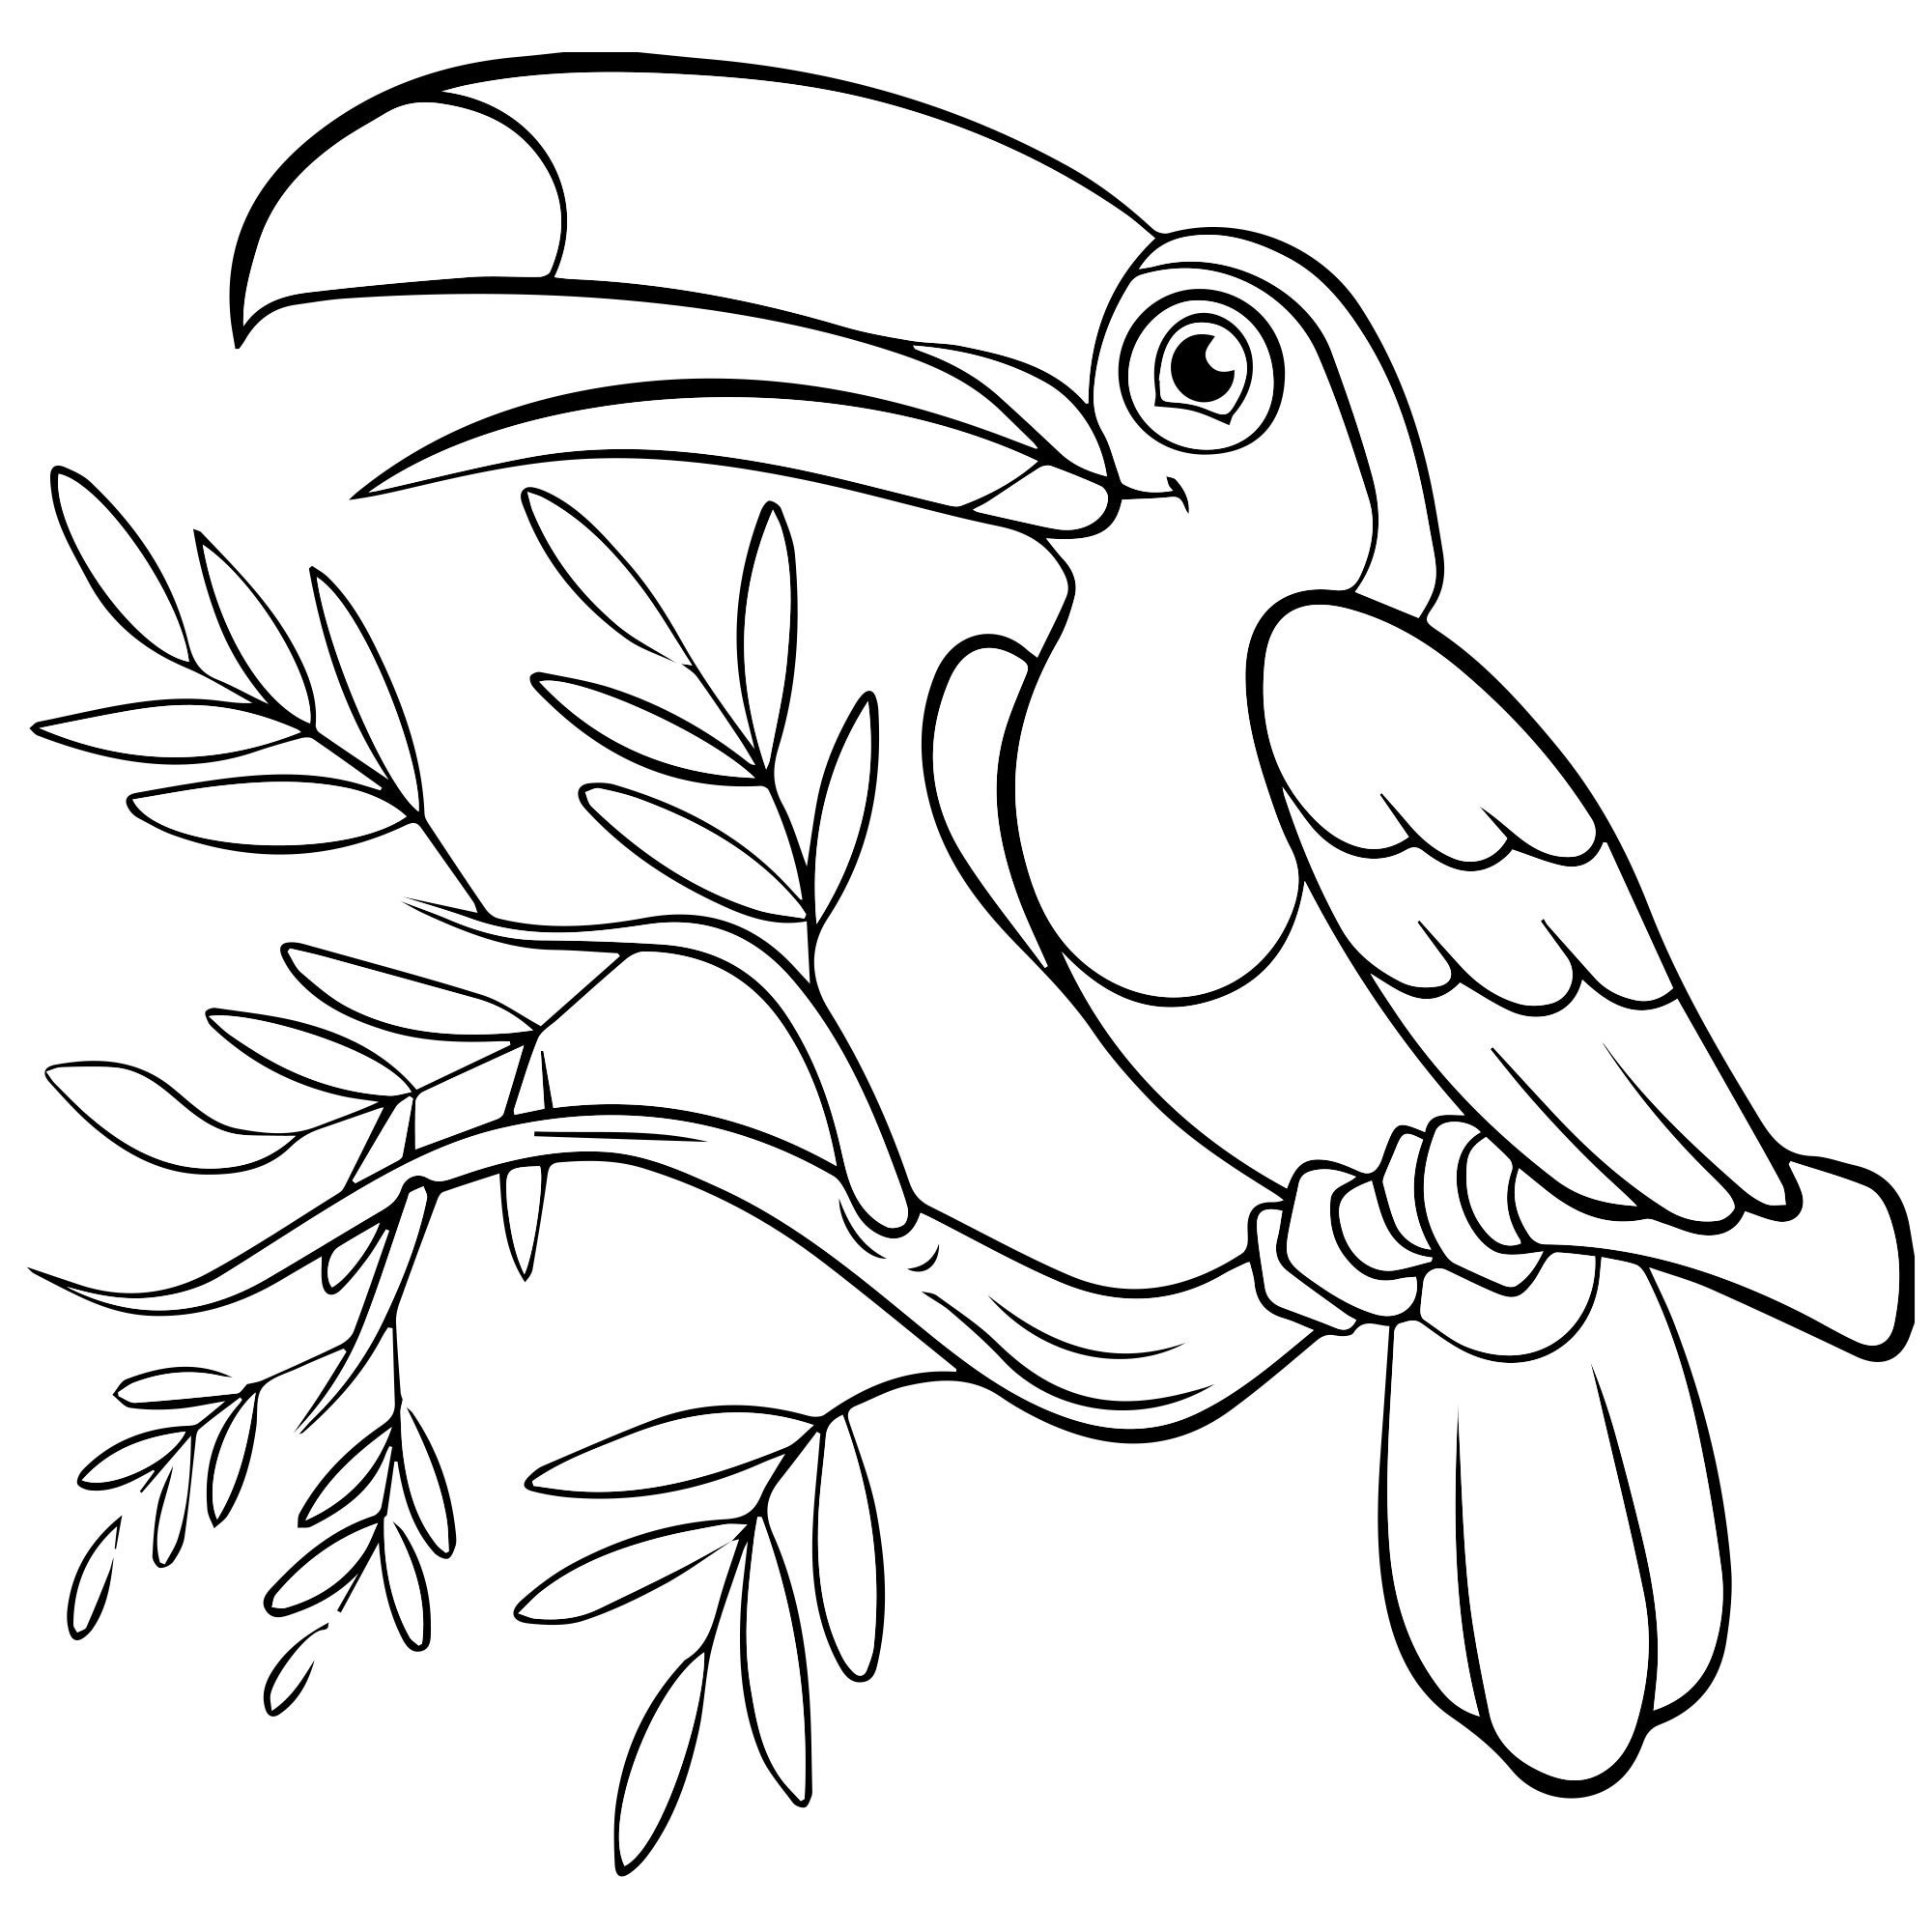 Раскраски птиц — распечатать или скачать бесплатно